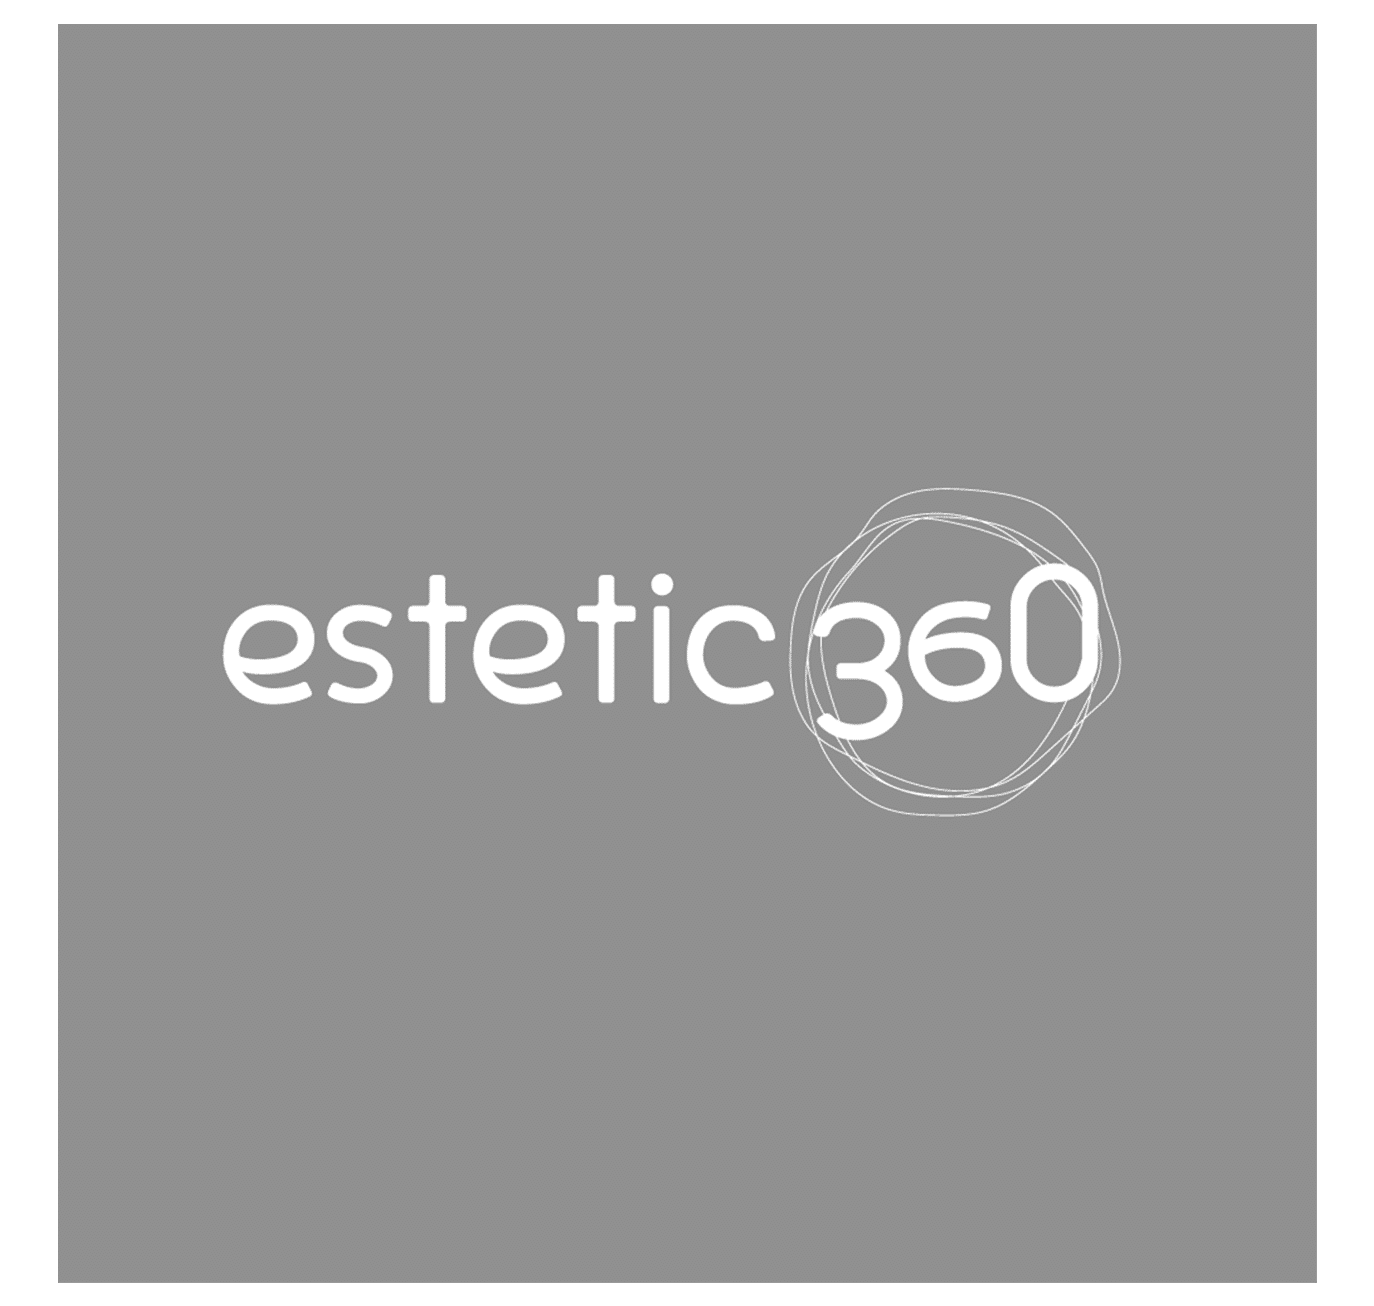 Estetic360